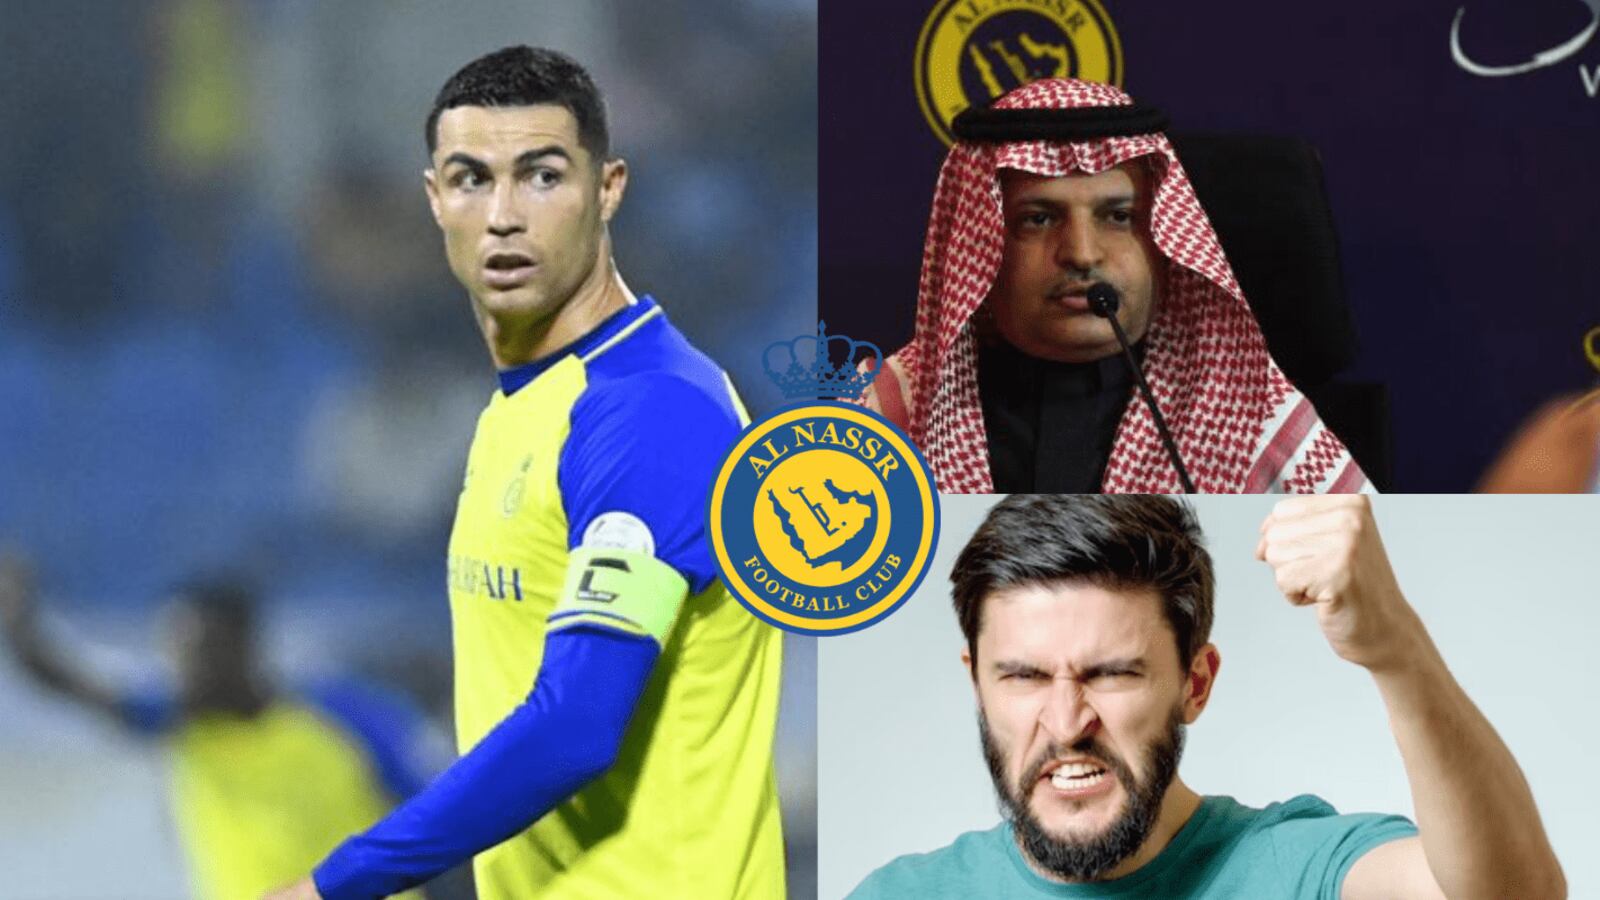 ¿Camerino roto? Al Nassr y la acción que podría enojar  a Cristiano Ronaldo